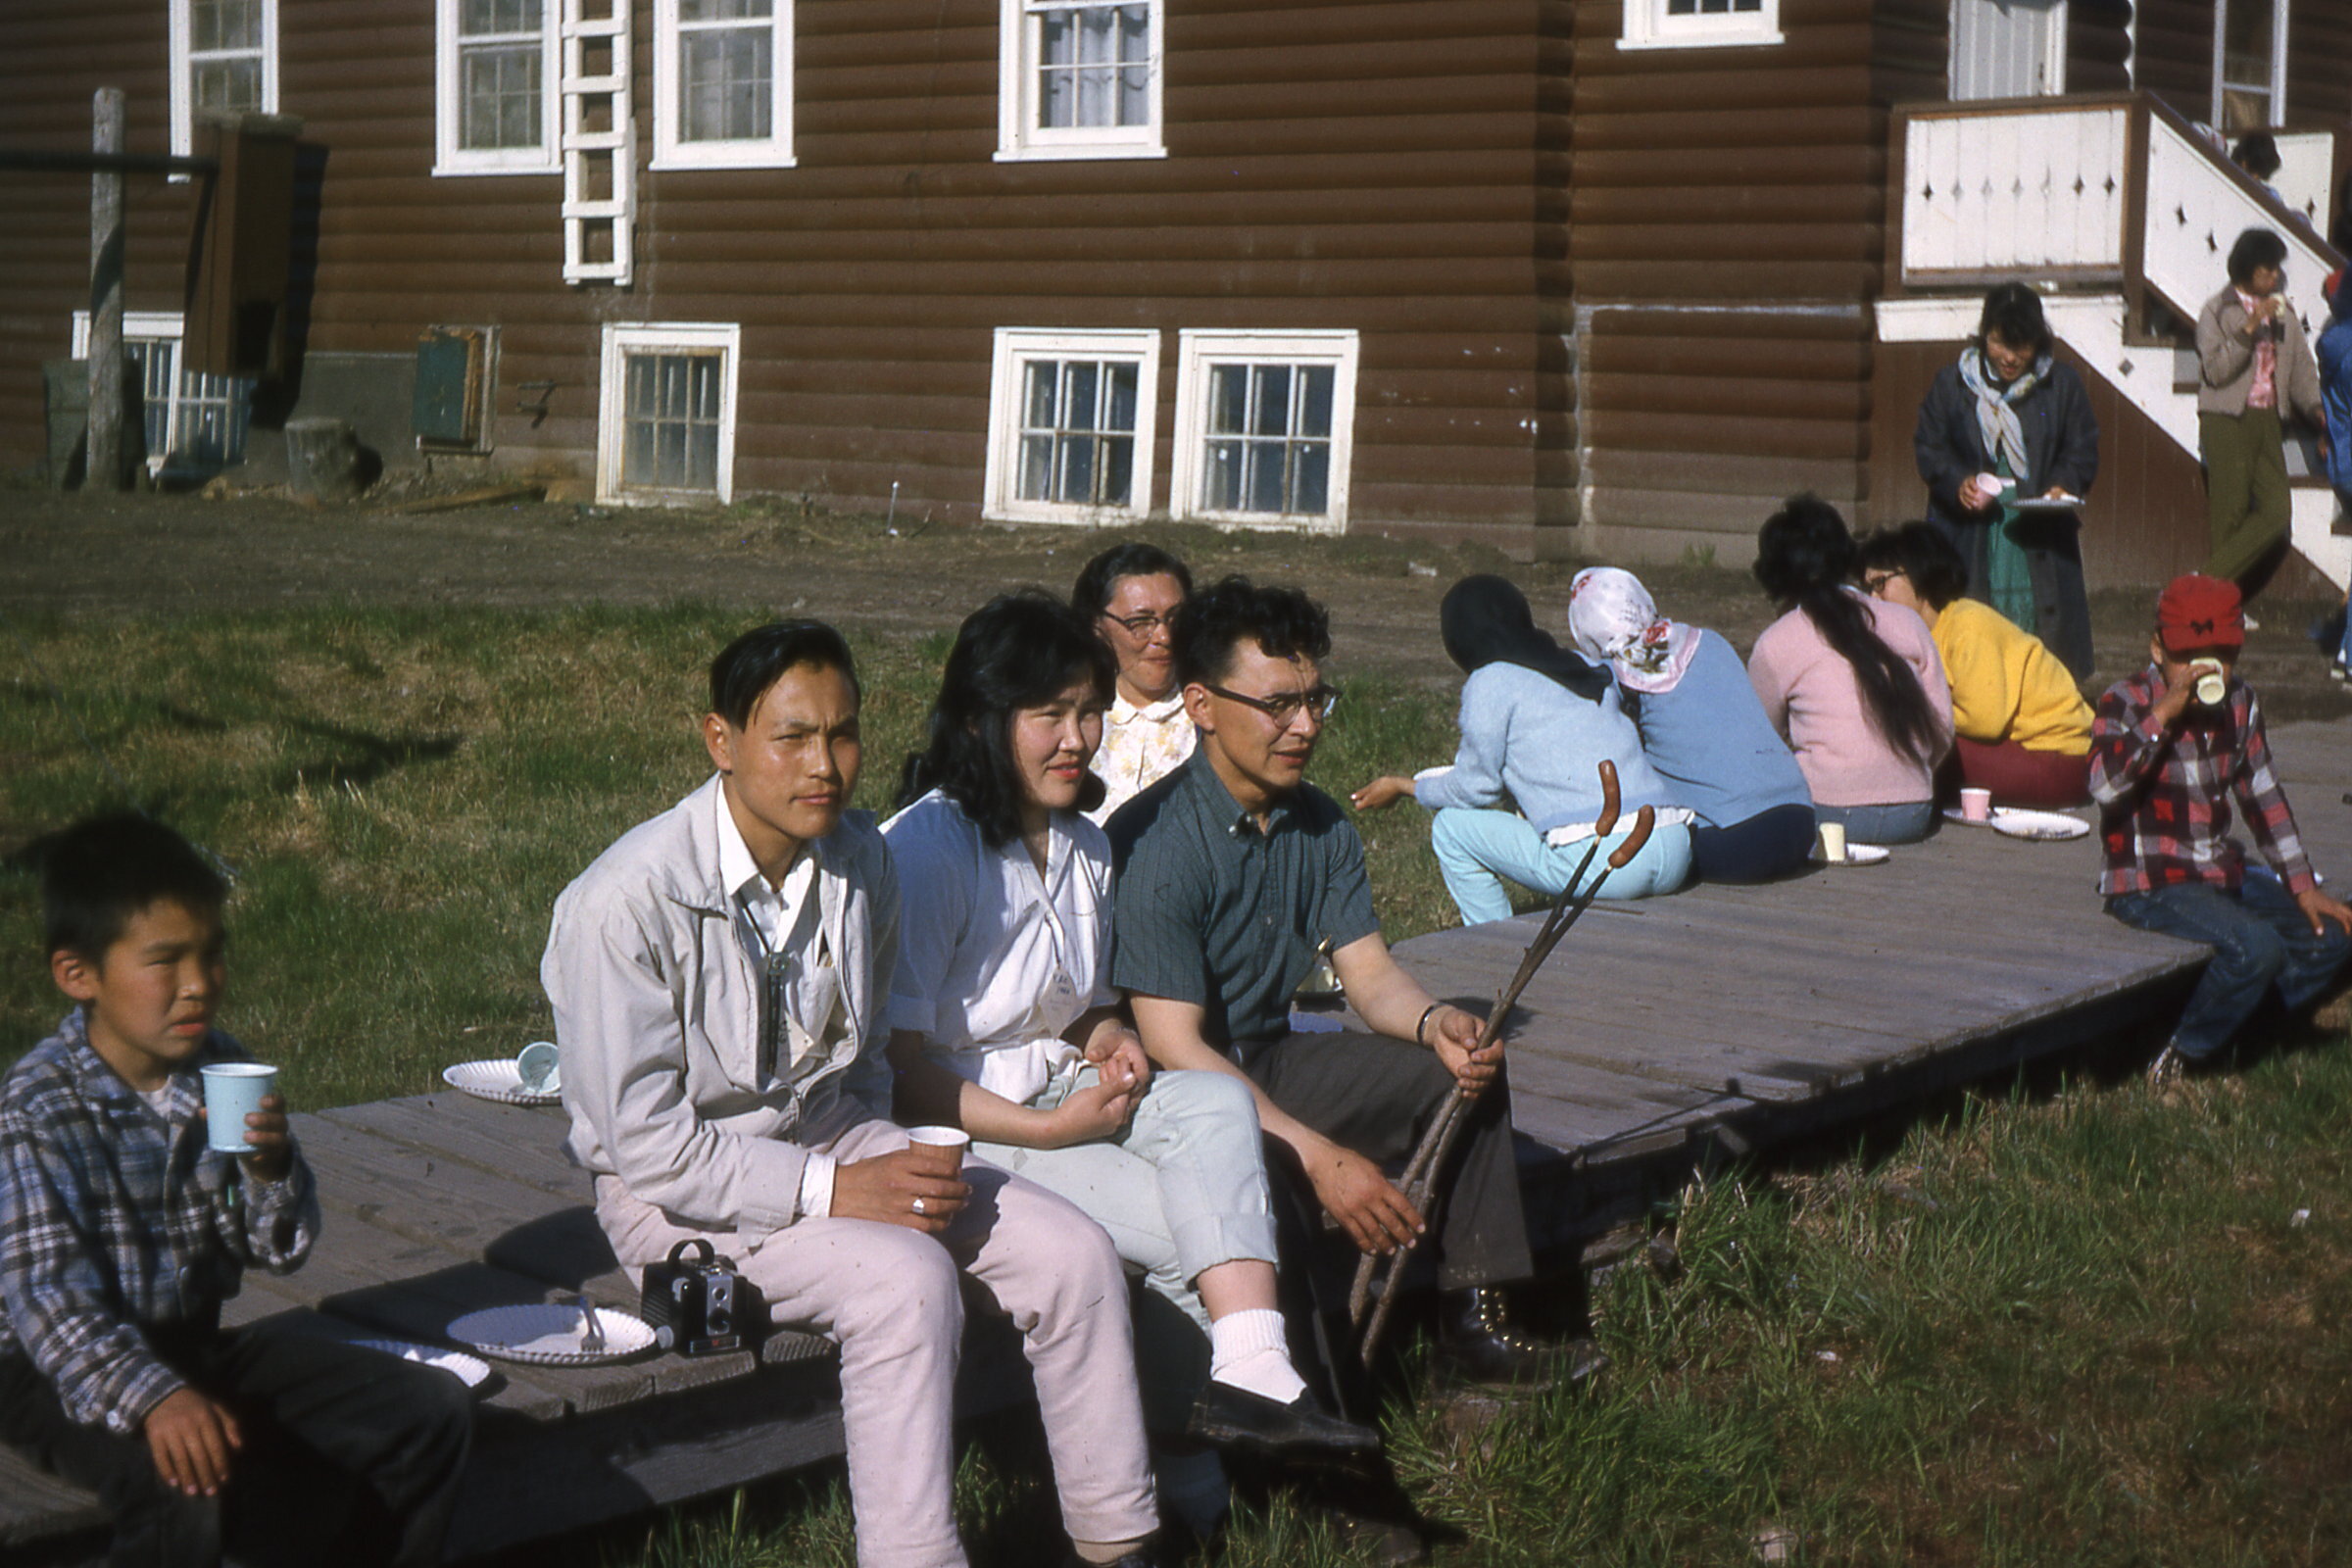 1966 YAC picnic 1.jpg